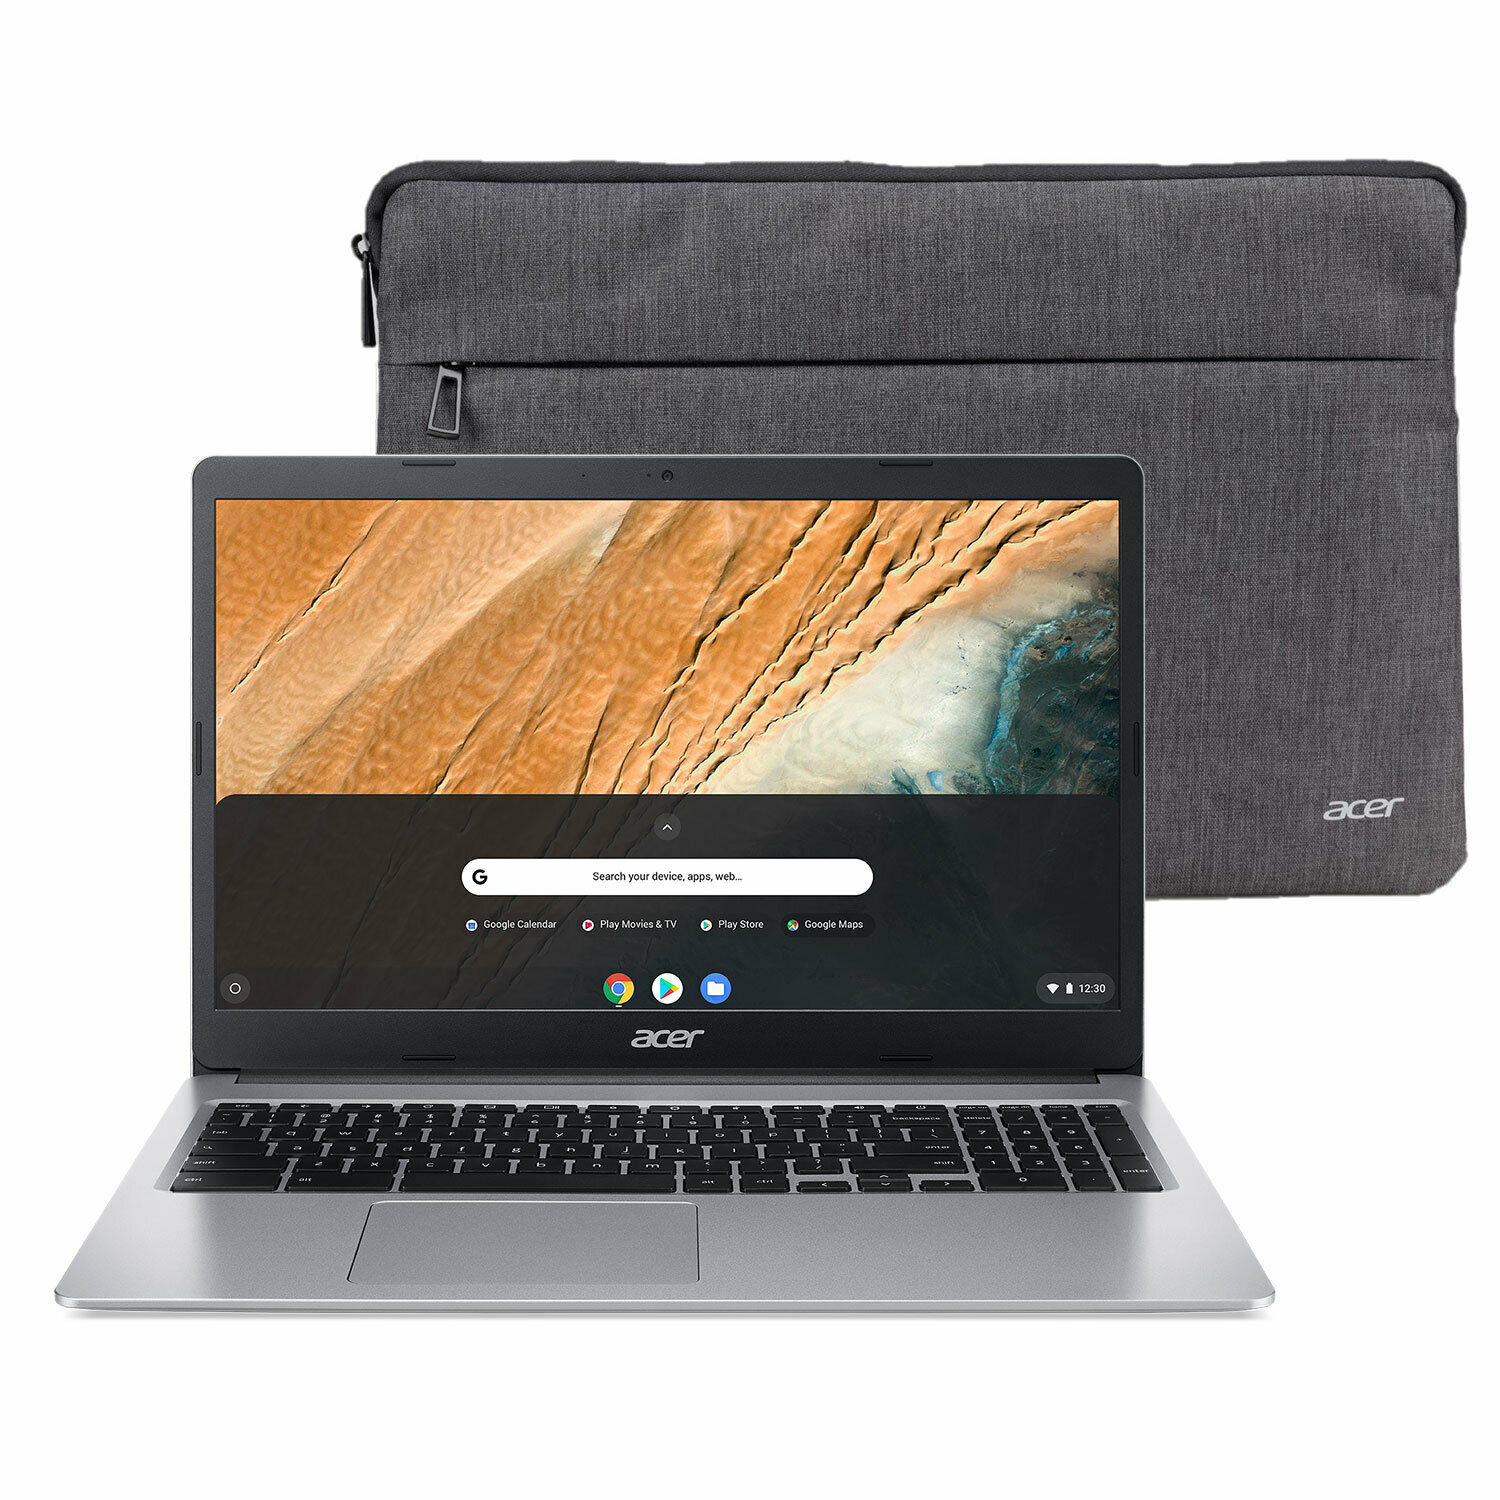 New 🔥 Acer Chromebook 15.6" Hd Intel N4000 4gb Ram 32gb Emmc Sleeve Bundle 💪